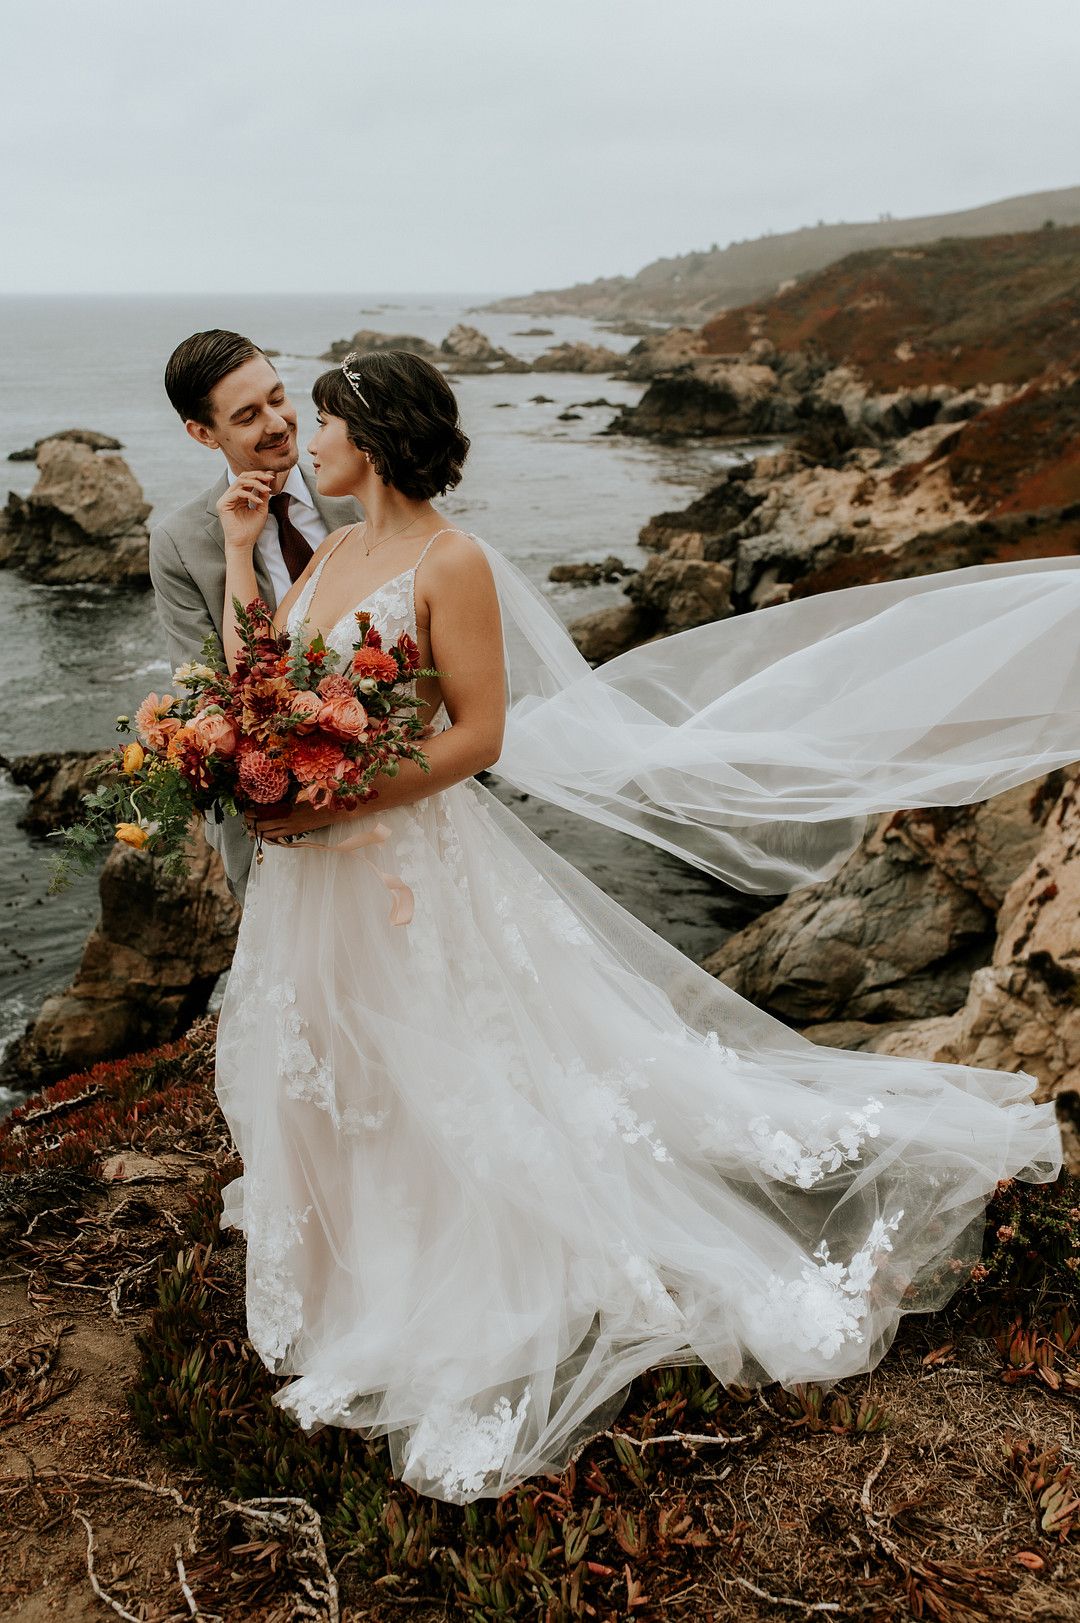 Bride and groom at coastal wedding in Big Sur, California